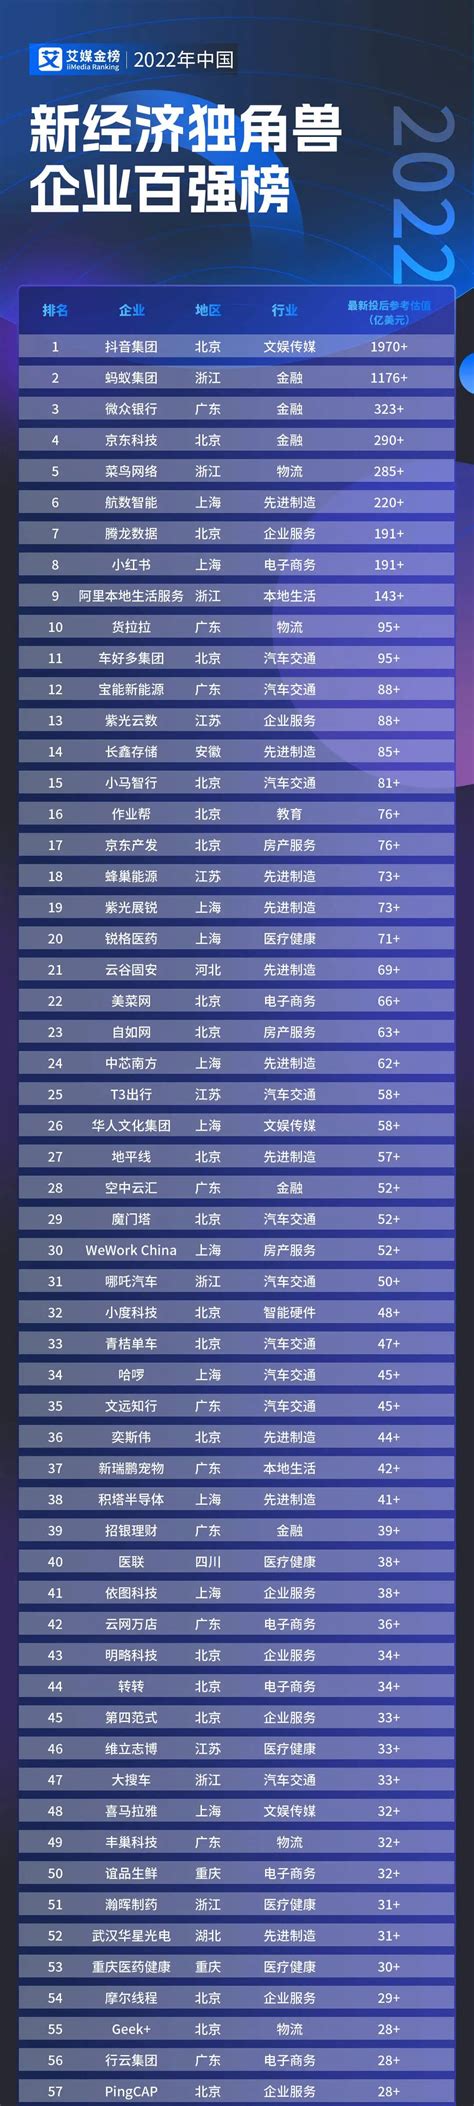 2019年中国独角兽企业排行榜（新文娱行业篇） - 锐观网